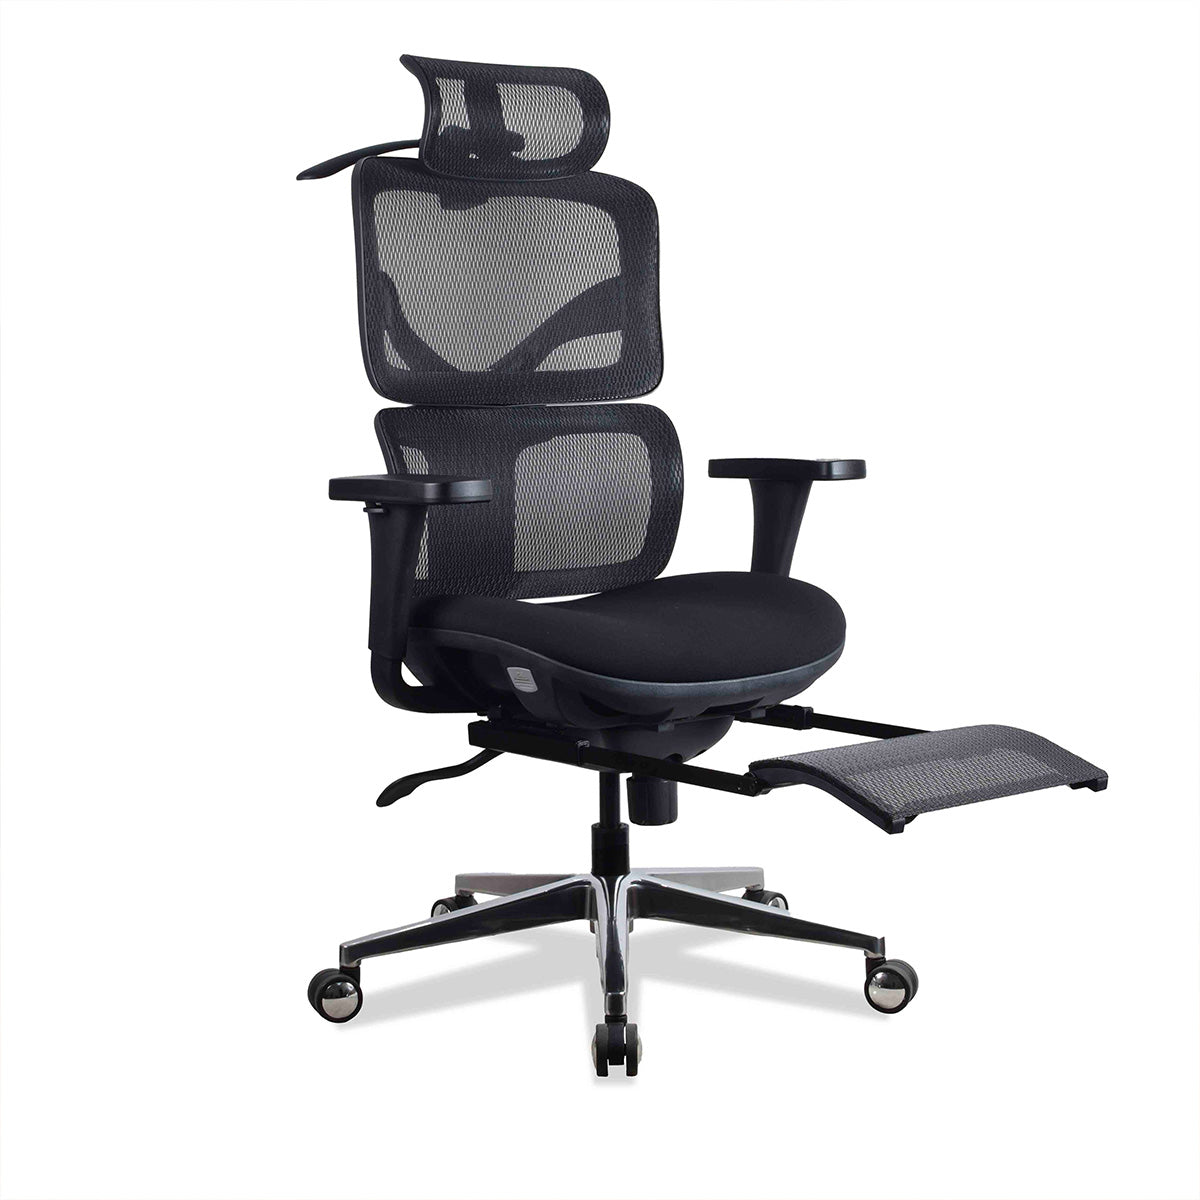 Chaise ergonomique de bureau avec repose pied - TERRANA KQUEO